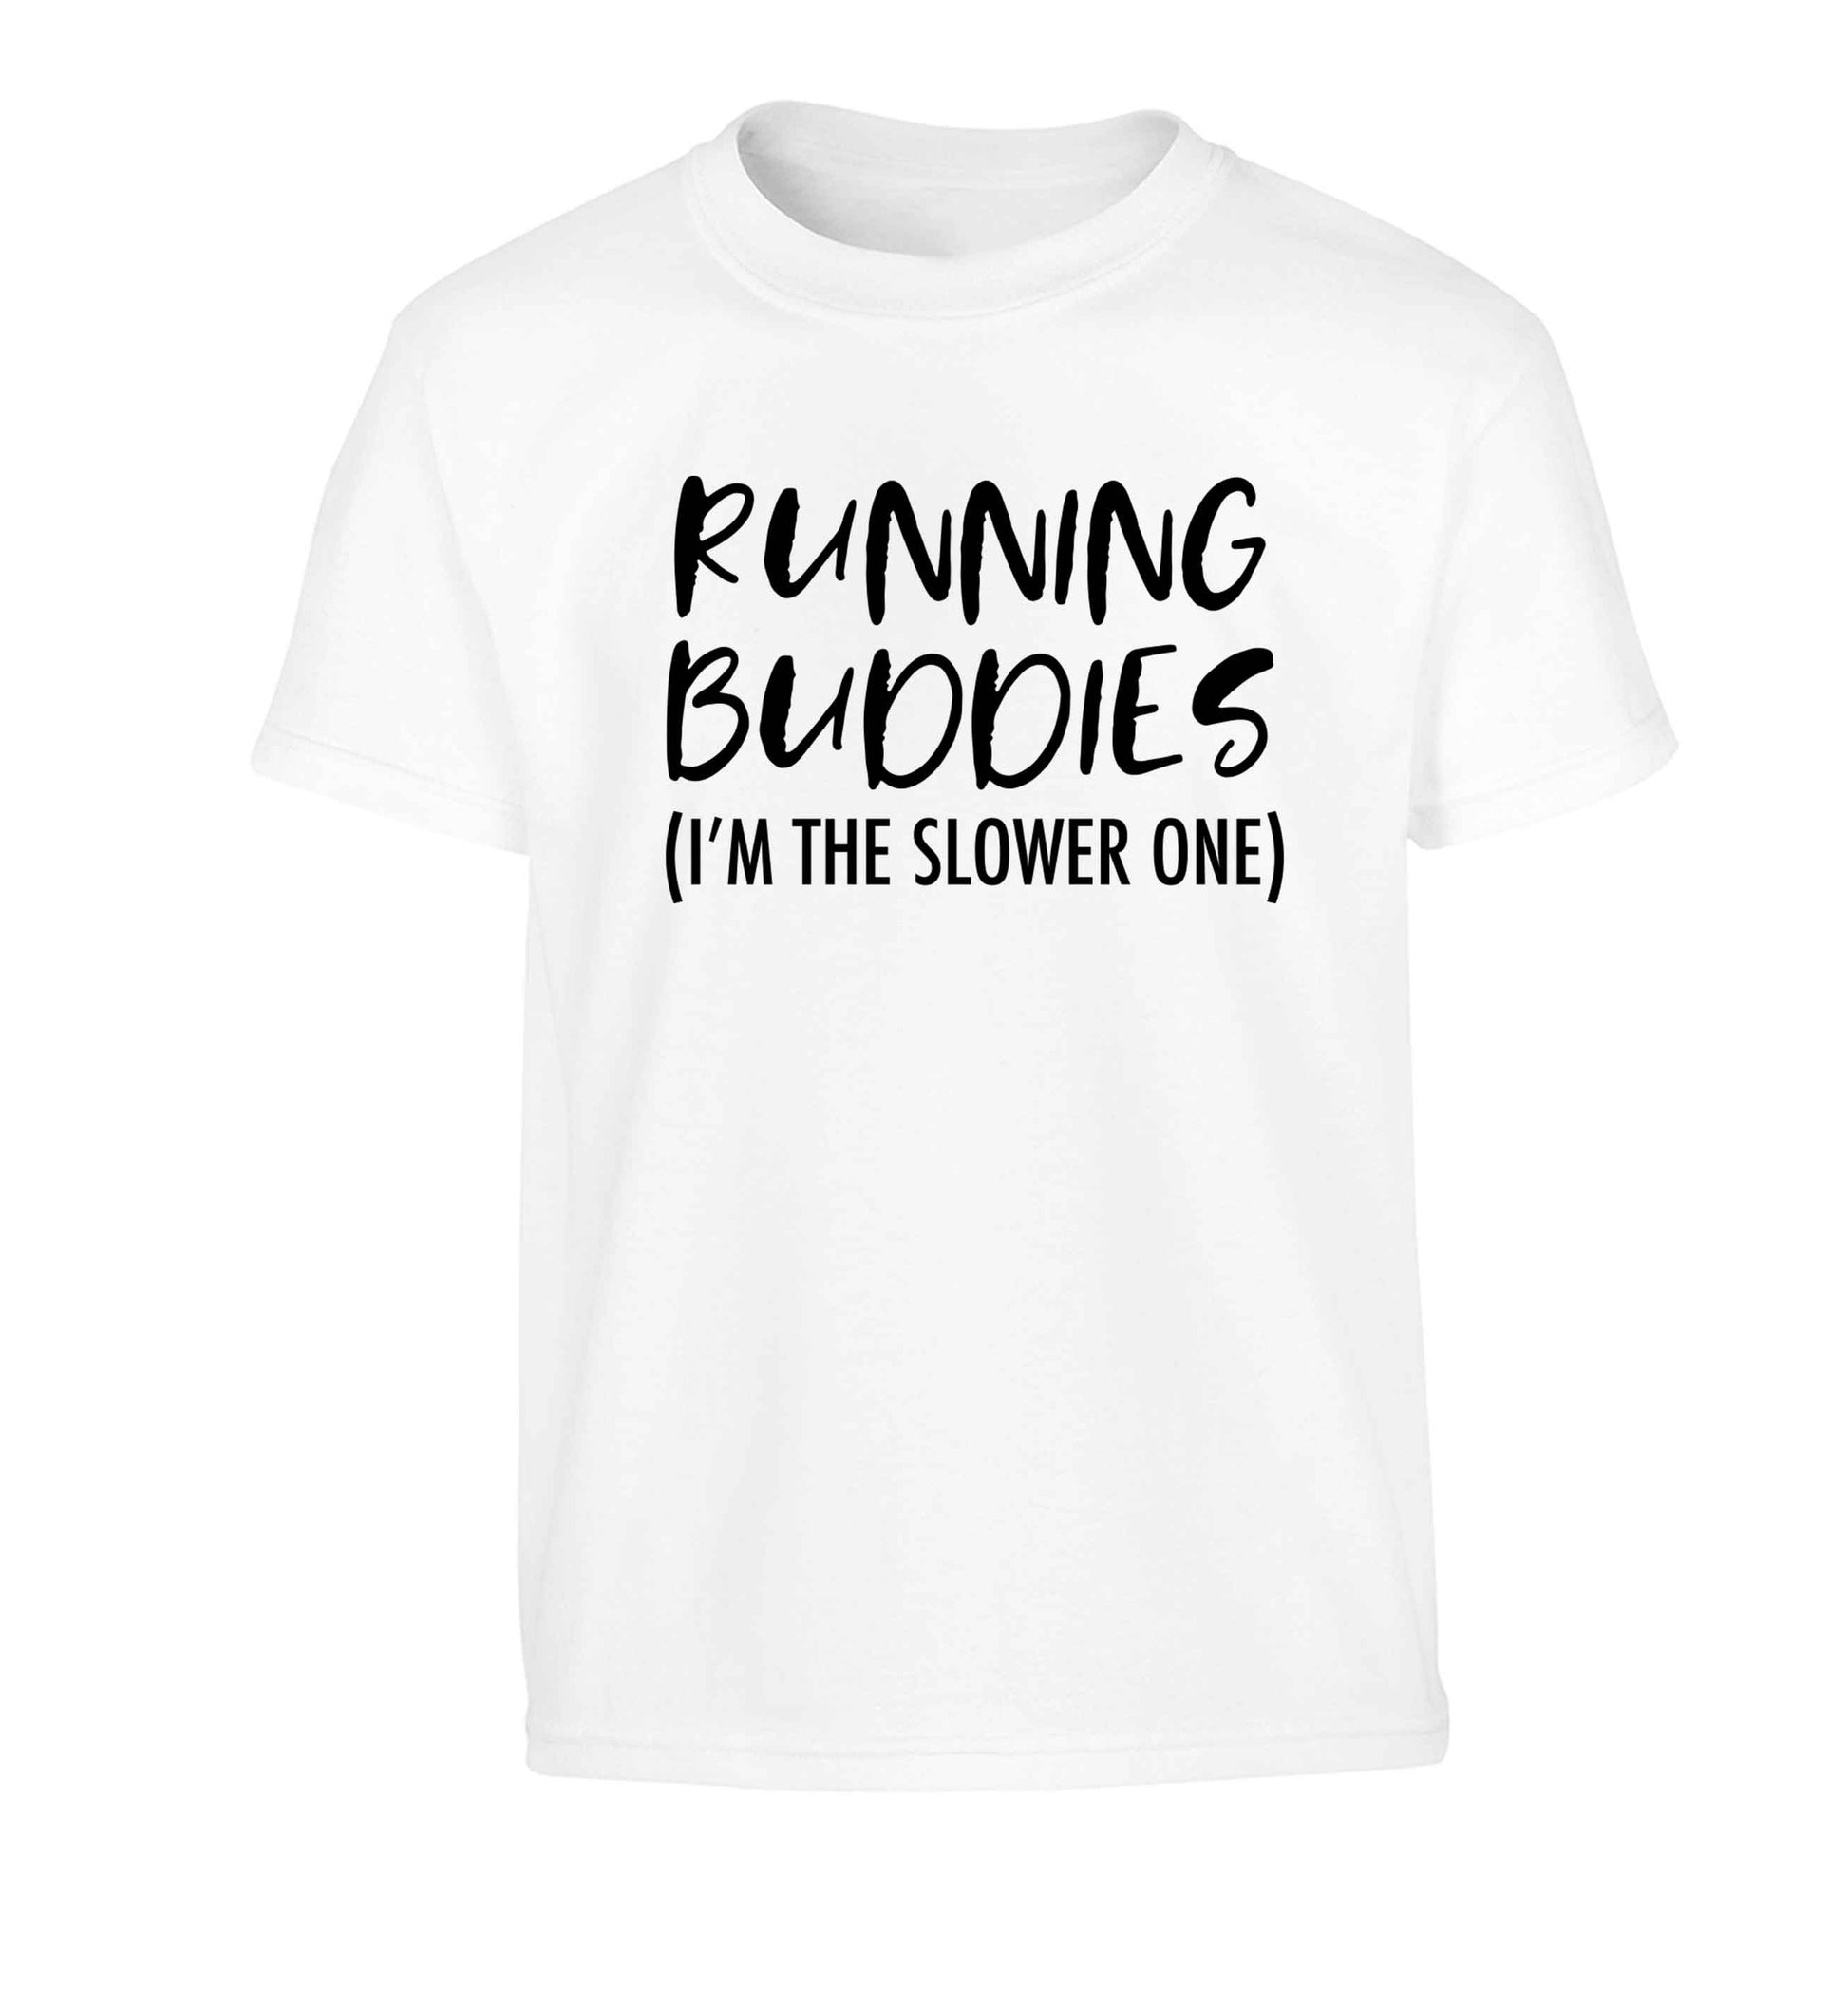 Running buddies (I'm the slower one) Children's white Tshirt 12-13 Years